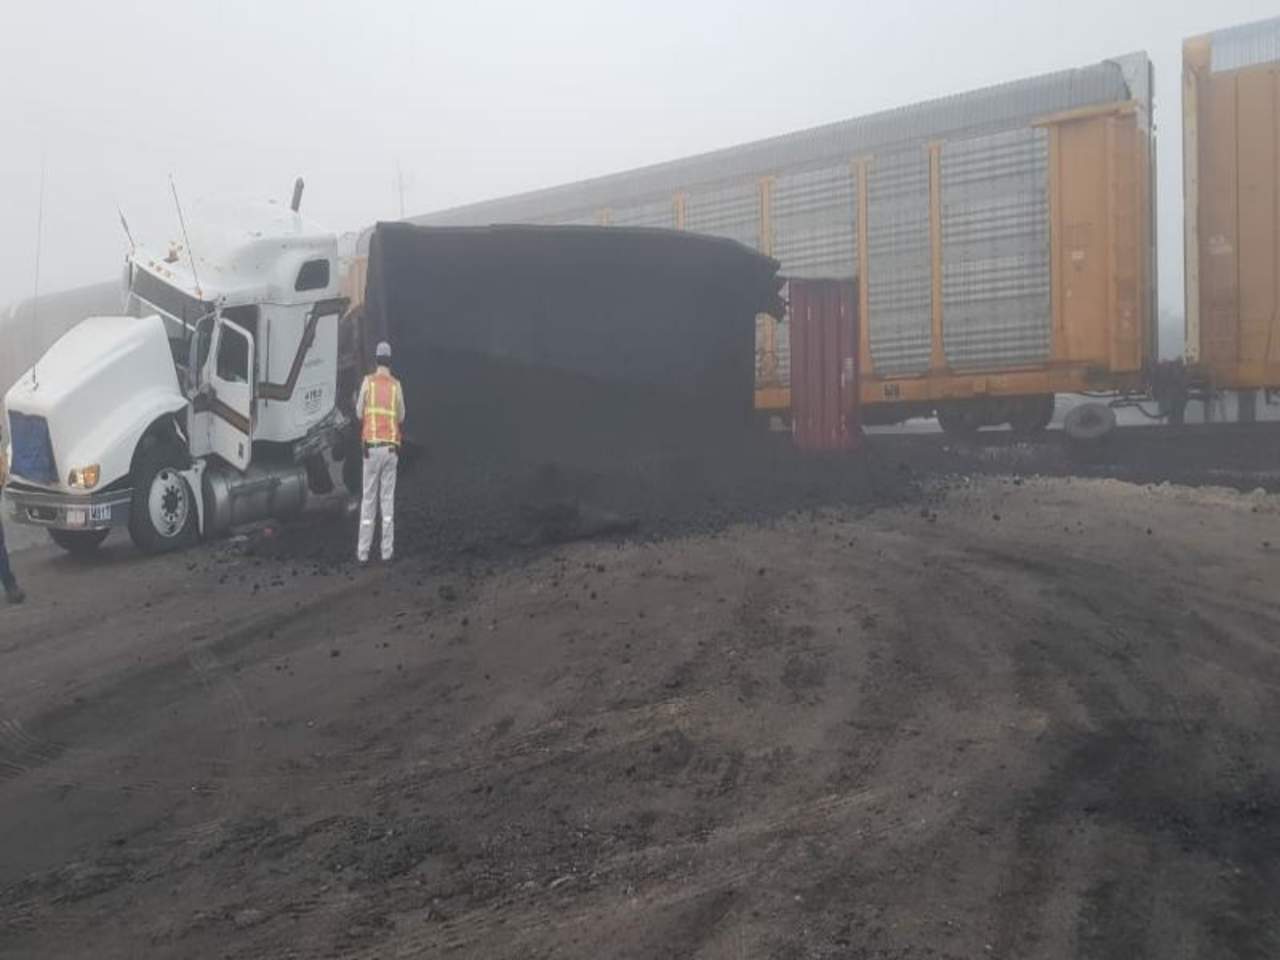 Presuntamente el accidente derivó de la densa niebla que se registró en la región Norte de Coahuila desde la madrugada de este miércoles. (ESPECIAL)